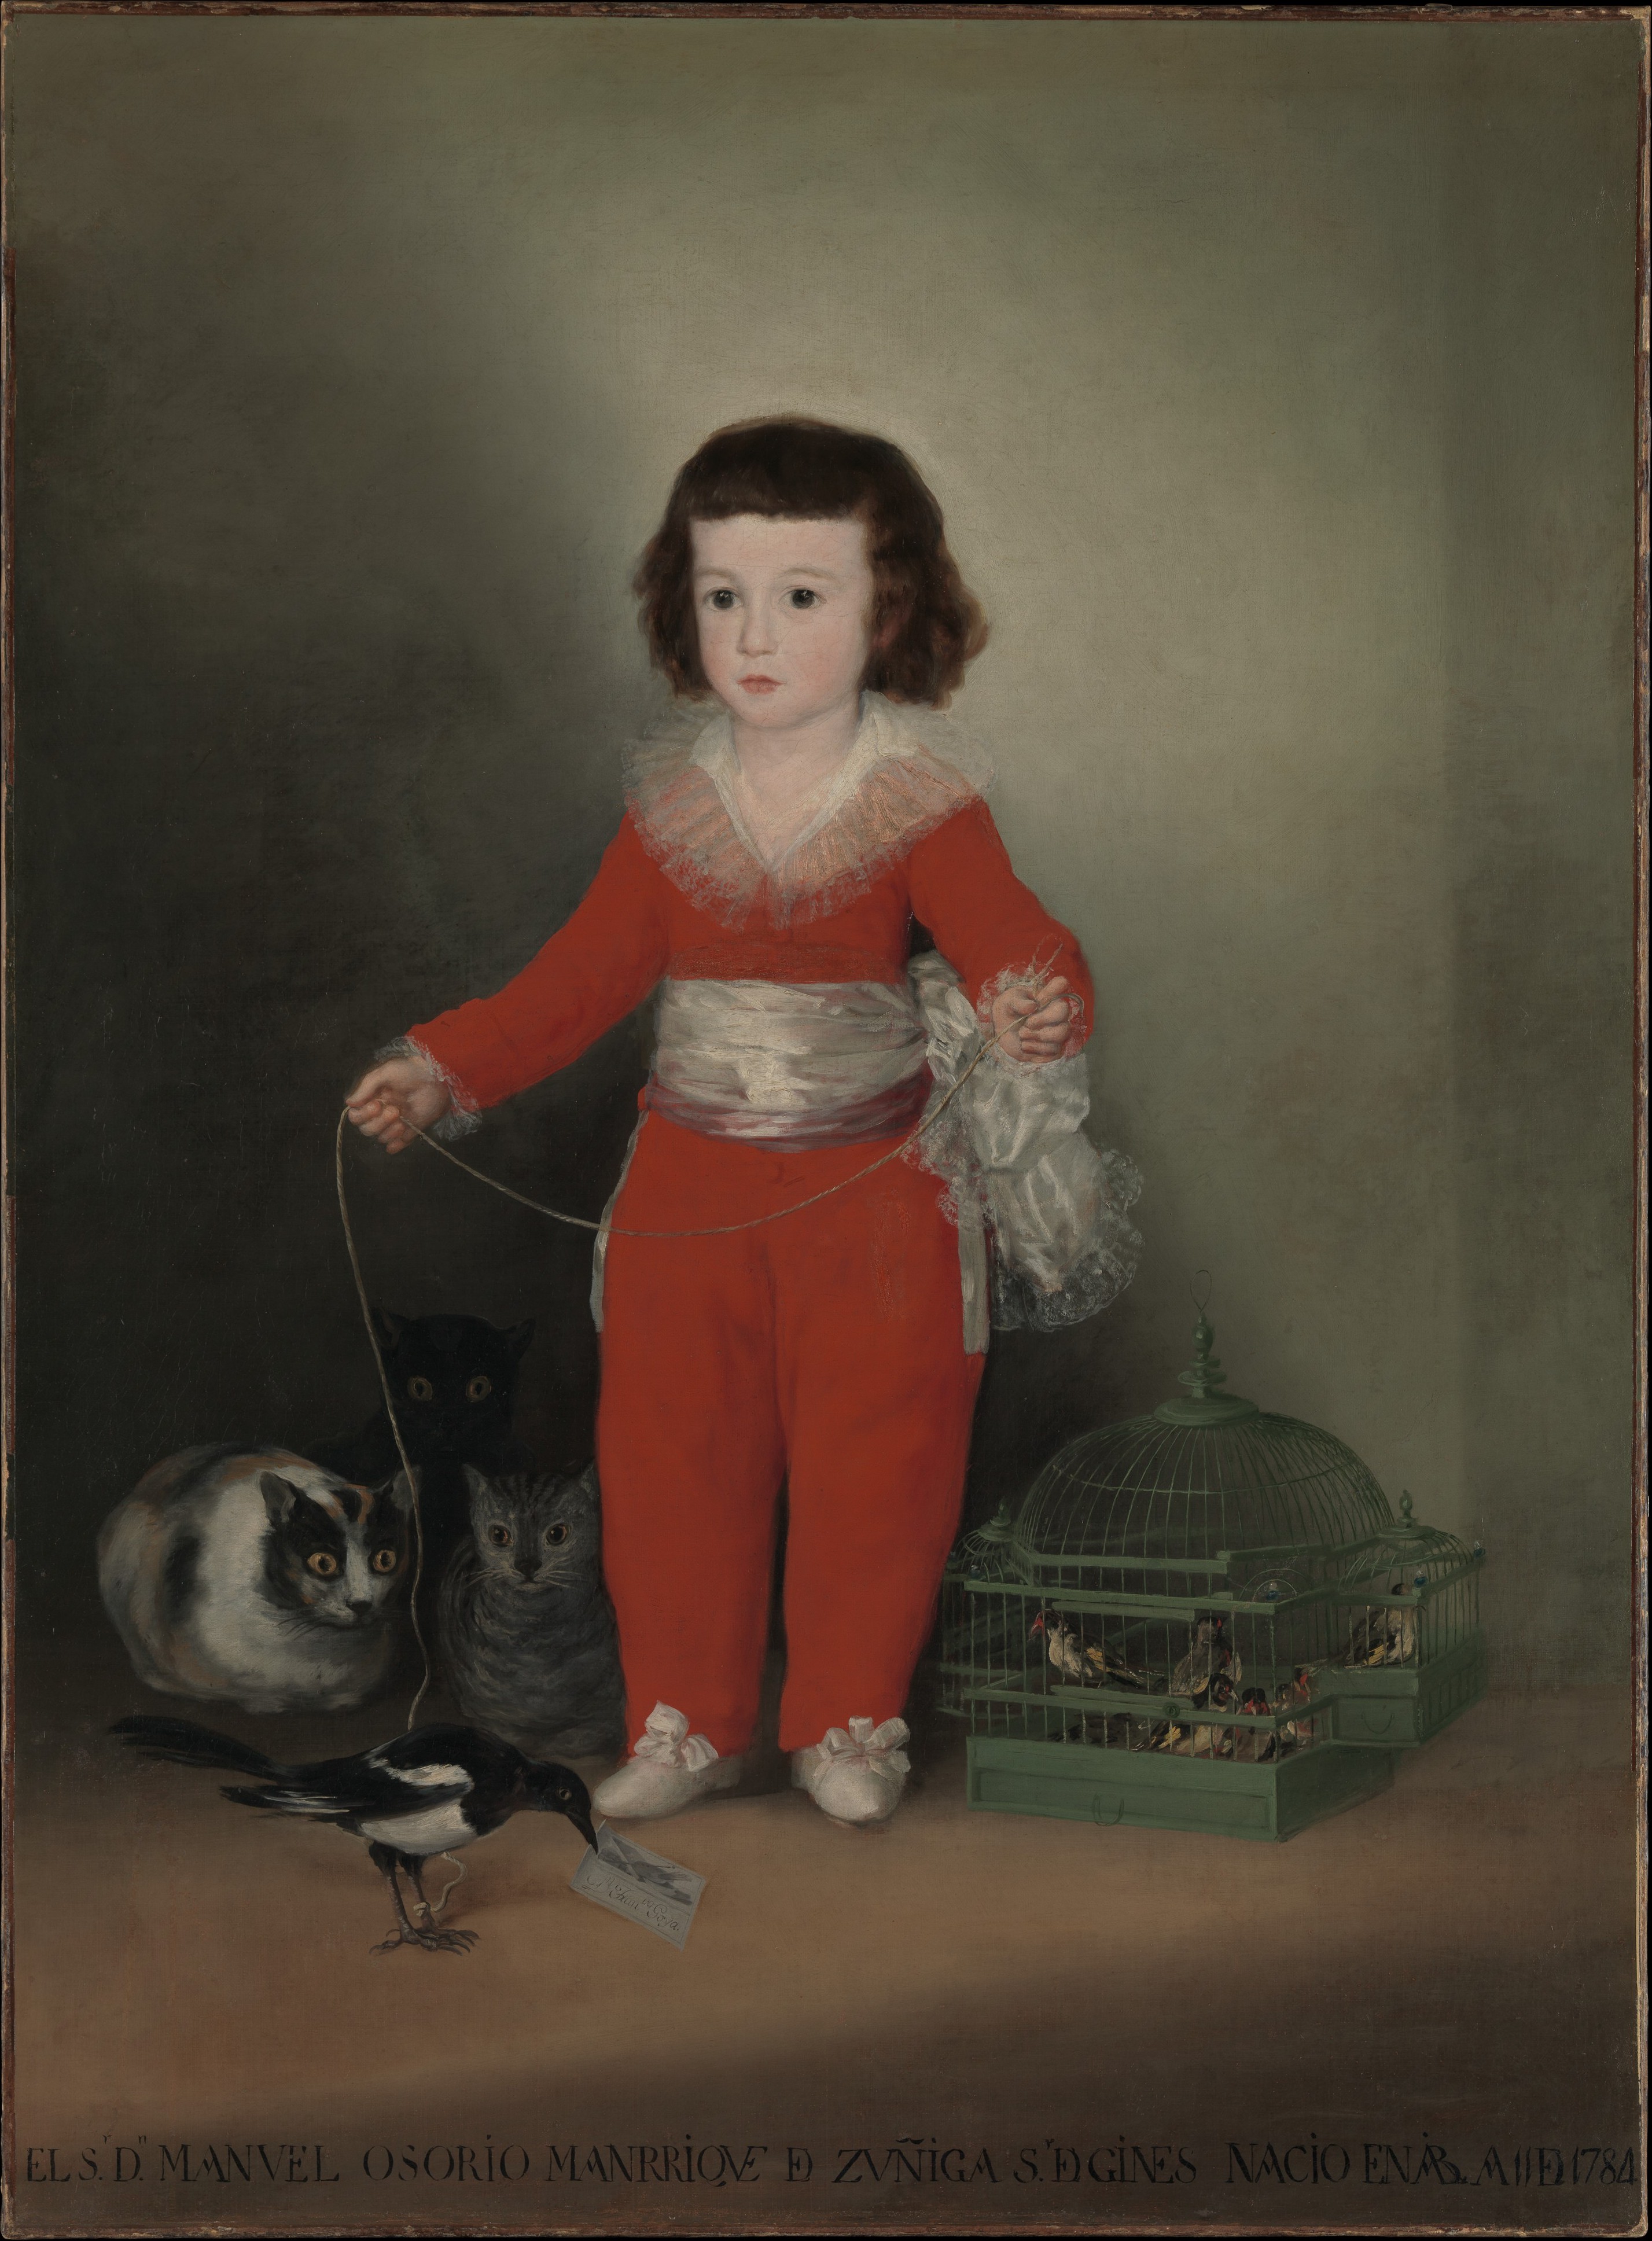 Мануель Осоріо Манріке де Суніга by Francisco Goya - 1787–88 - 127 x 101.6 см 